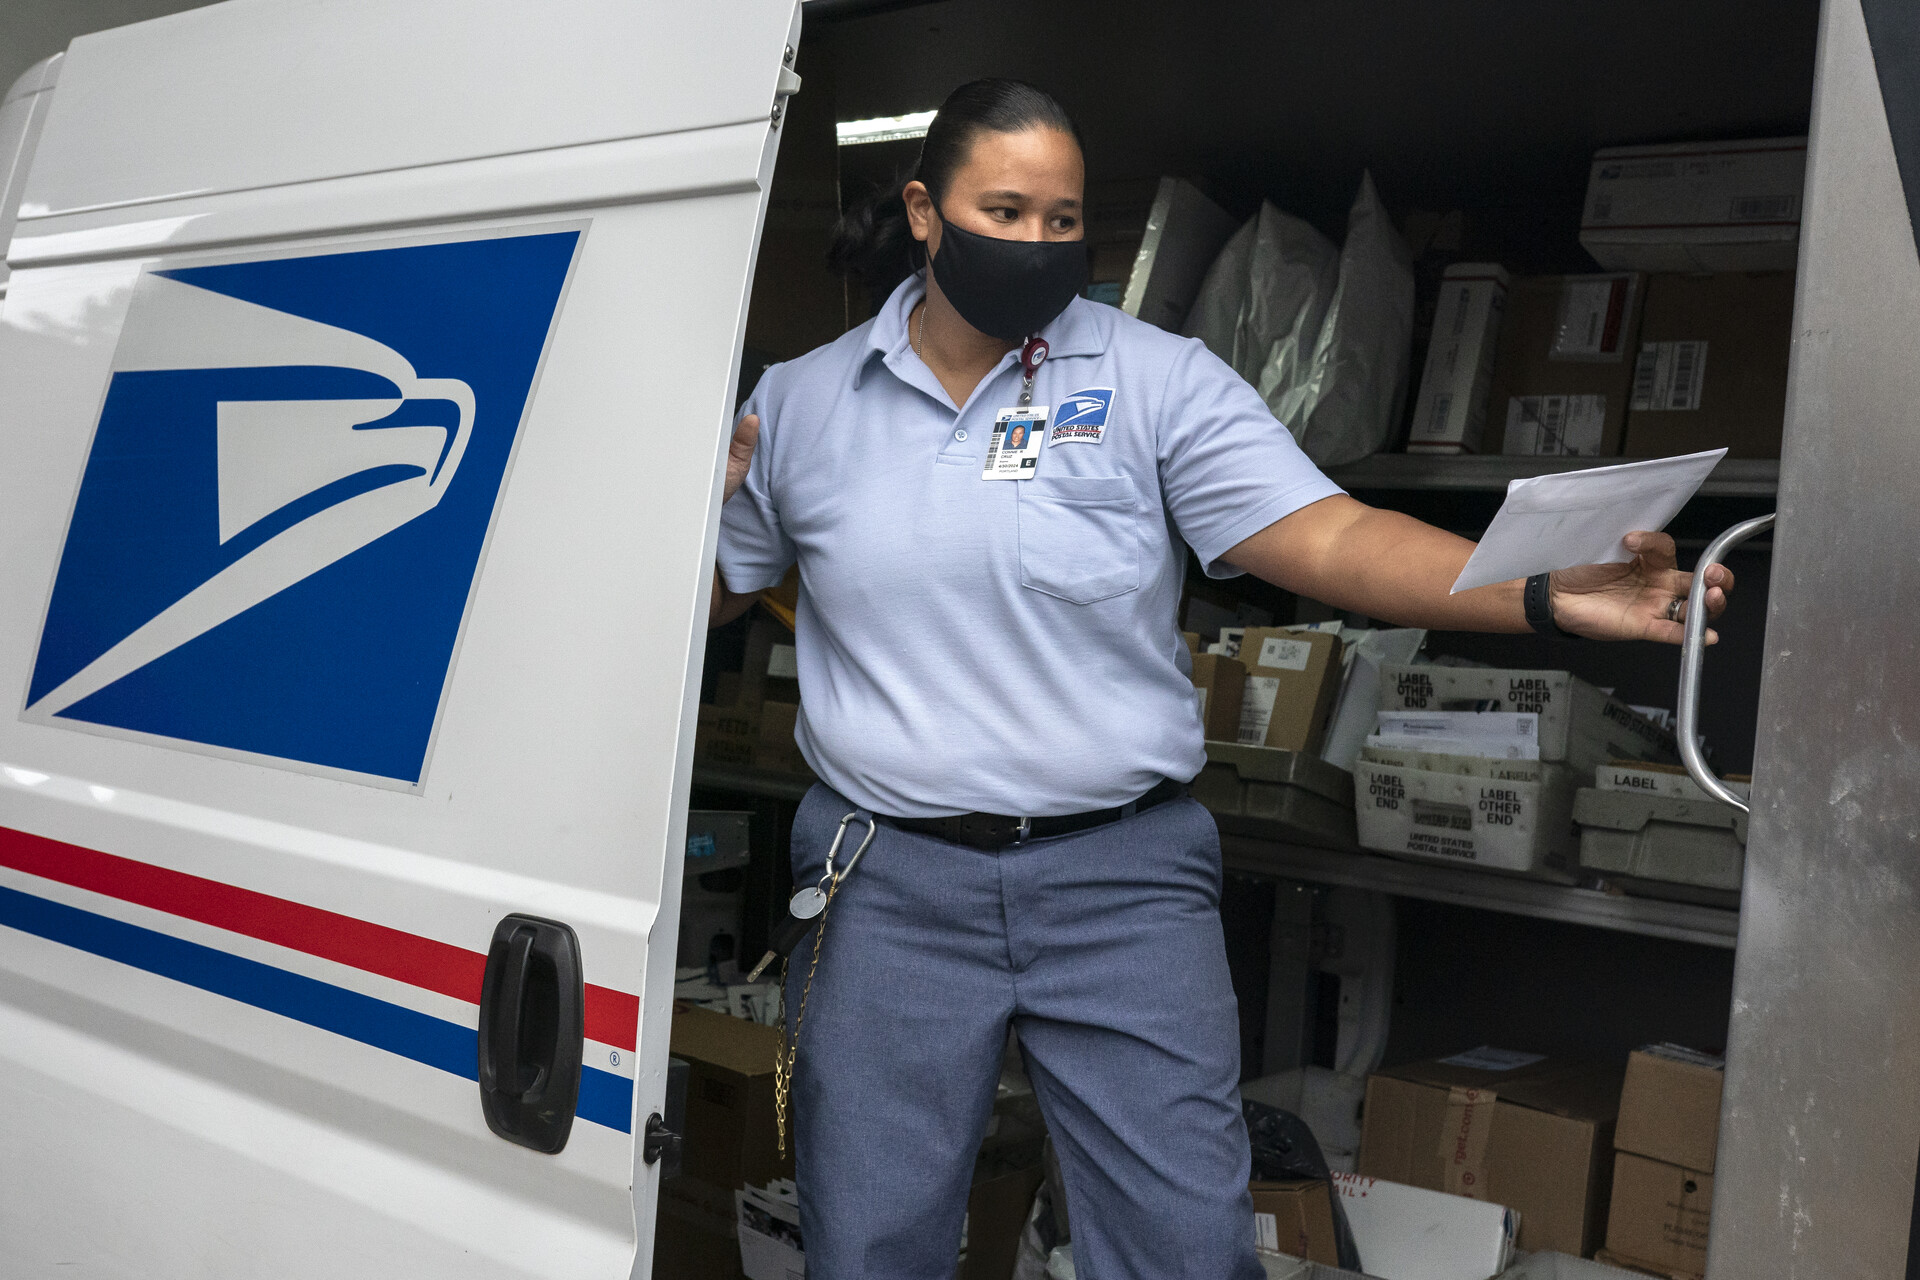 A uniformed postal service worker stands inside her mail van, with USPS logo visible on side of van